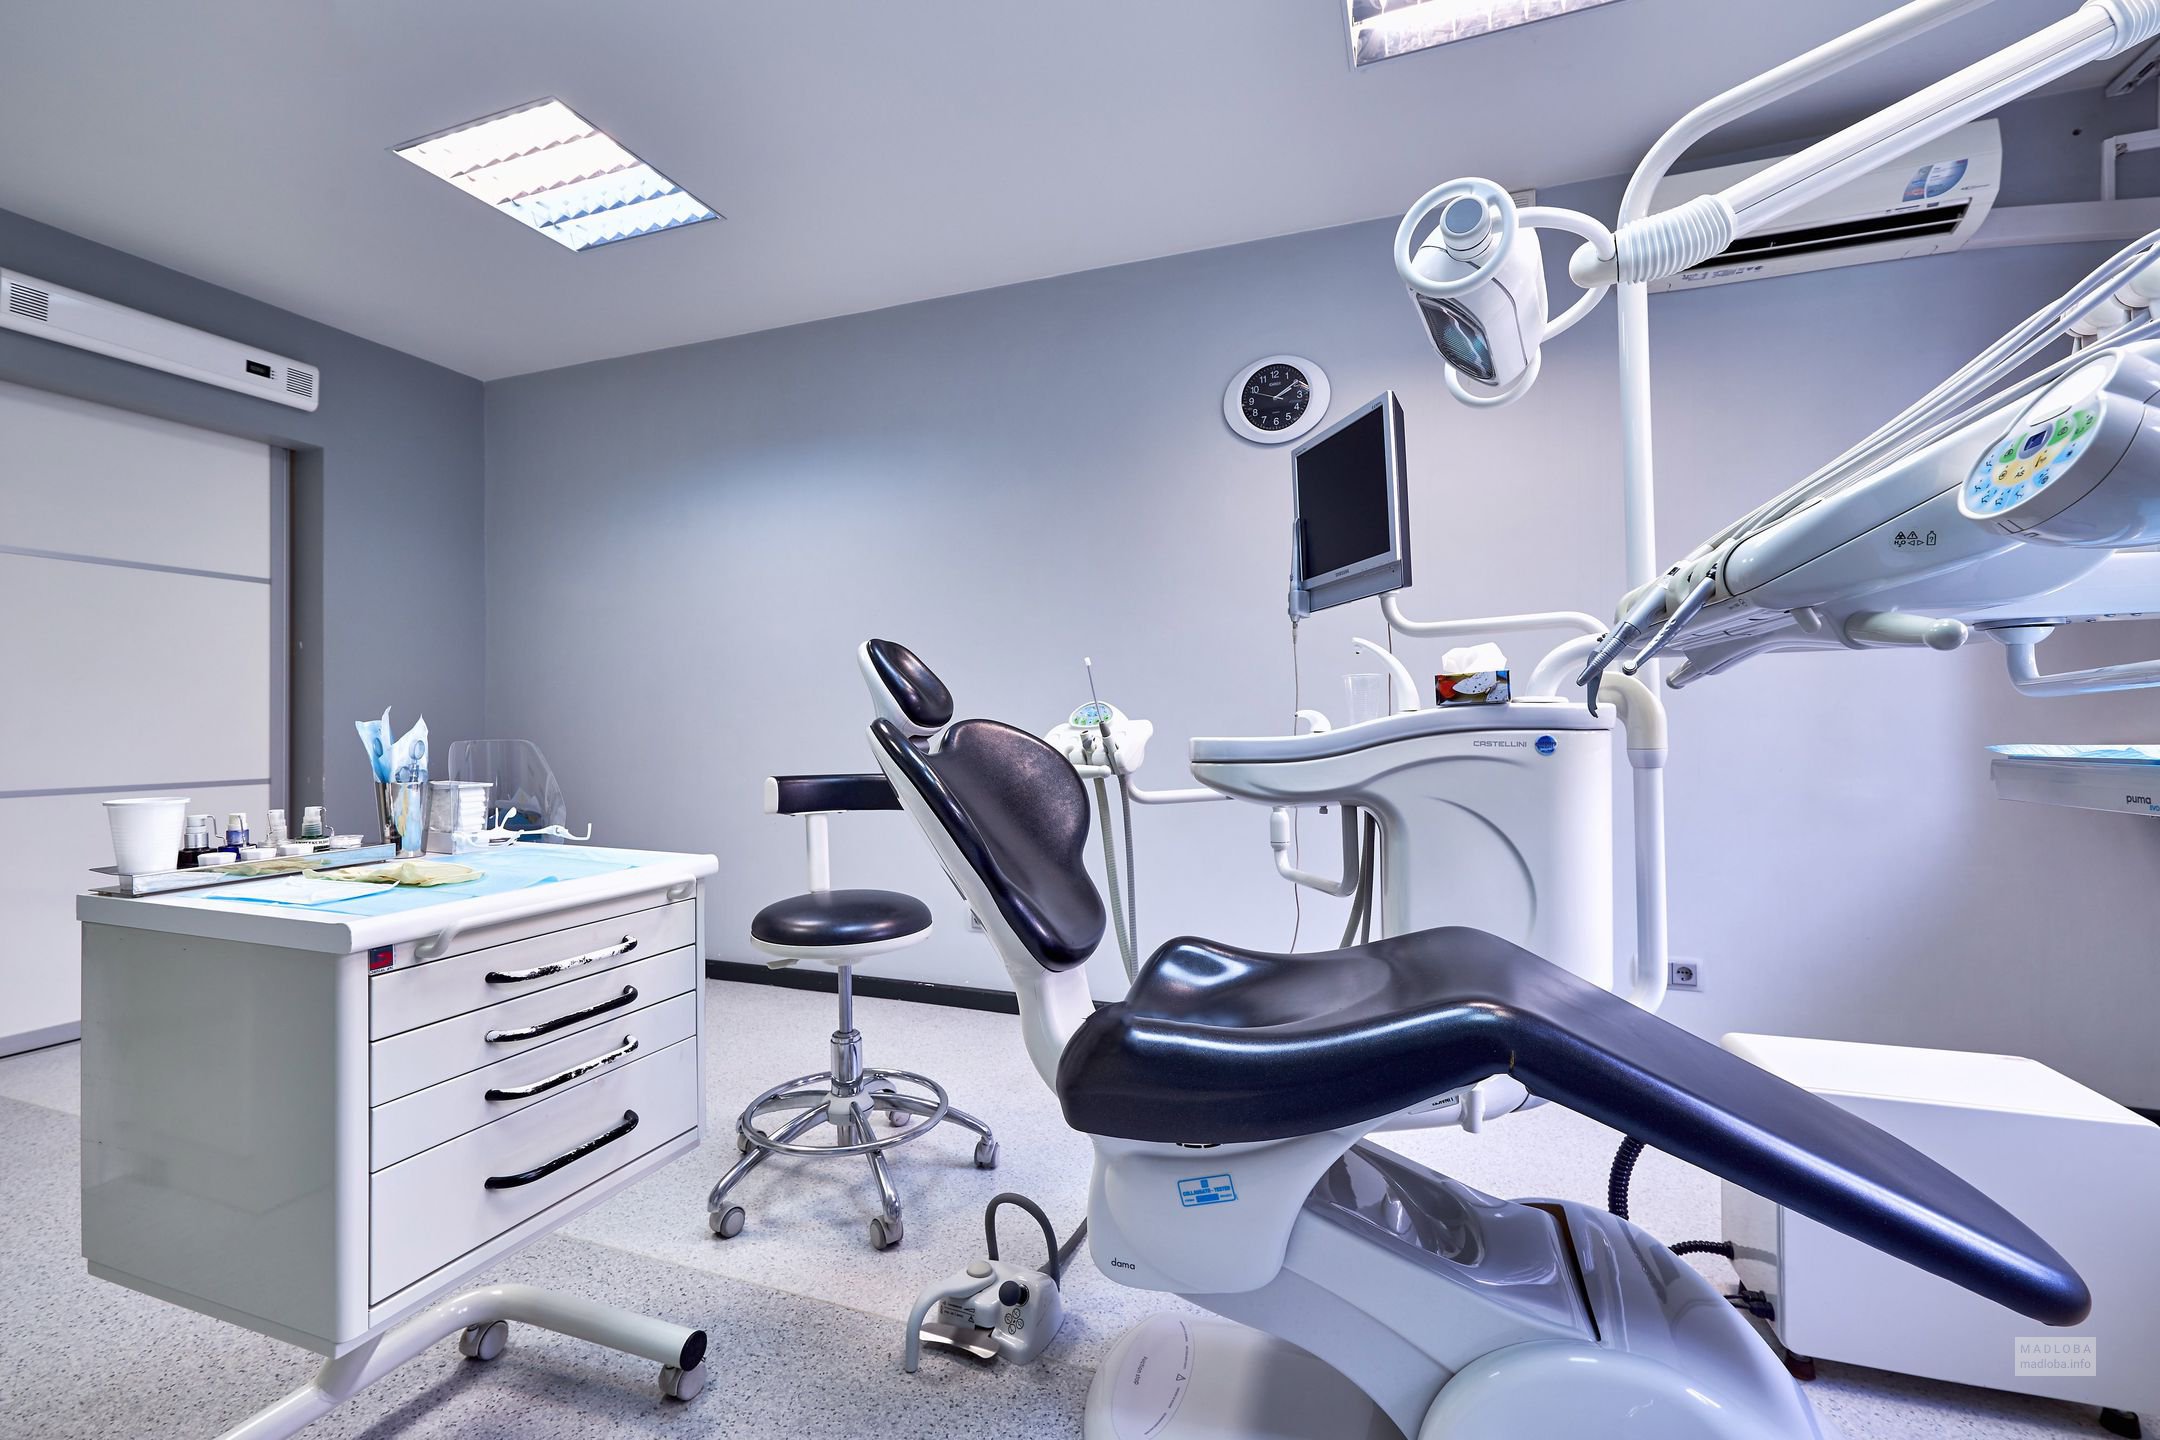 Биосовместимость и долговечность световых композитов в стоматологии современные решения В современной стоматологии особое внимание уделяется качеству и долговечности используемых материалов. Световые композиты – один из наиболее востребованных и эффективных материалов для реставрации зубов. Они позволяют стоматологам создавать эстетически привлекательные и функционально-прочные реставрации. Одним из ключевых факторов, определяющих успех стоматологического лечения, является биосовместимость материалов. Световые композиты, используемые в современной стоматологии, отличаются высокой биосовместимостью. Это означает, что они максимально безопасны для организма и не вызывают аллергических реакций у пациентов. Биосовместимость световых композитов обеспечивается использованием качественных и безопасных компонентов, а также соблюдением технологии их производства. Долговечность световых композитов также является одним из их основных преимуществ. При правильной установке и соблюдении рекомендаций по эксплуатации, реставрации, выполненные из световых композитов, могут обеспечивать долгосрочную службу и сохранять свою первоначальную эстетику. Это позволяет пациентам наслаждаться красивой улыбкой и уверенно чувствовать себя в любой ситуации. Для достижения максимальной эффективности и качества стоматологического лечения, важно выбирать материалы у проверенных и надежных поставщиков. Например, магазин "Зубик" предлагает широкий выбор световых композитов от ведущих производителей. Здесь вы можете найти и приобрести материалы, которые отличаются не только высокими качеством и эффективностью, но и доступной ценой. Вместе с "Зубик" вы сможете обеспечить своих пациентов качественным лечением и достичь отличных результатов в реставрации зубов. Важность биосовместимости световых композитов в стоматологии Биосовместимость световых композитов зависит от их химического состава и свойств. Она определяет способность материалов взаимодействовать с тканями зубов и окружающими их структурами без вызывания негативных побочных эффектов или аллергических реакций. Отсутствие токсических или раздражающих веществ в составе световых композитов гарантирует их безопасность и минимизирует риск возникновения побочных эффектов. Особое внимание следует уделять биосовместимости световых композитов при использовании их в эстетической стоматологии. Процедуры по восстановлению фронтальных зубов требуют использования материалов, которые сочетаются с естественным цветом зубов и обеспечивают превосходную эстетику. Благодаря своей биосовместимости, световые композиты способны сохранять свой первоначальный цвет и оптические свойства на протяжении многих лет, предоставляя пациентам безупречный результат. Биосовместимые световые композиты обладают высокой прочностью и долговечностью. Использование материалов, которые не только обеспечивают эстетически привлекательный результат, но и выдерживают длительную эксплуатацию, является ключевым фактором для удовлетворения потребностей пациентов. Биосовместимые световые композиты обладают отличной адгезией к зубным тканям, что обеспечивает долговечность восстановлений и минимизирует риск отслаивания или выцветания материала. Выбор биосовместимых световых композитов способствует сохранению здоровья зубов и окружающих тканей. Композитные материалы, которые не проникают в зубную эмаль и не вызывают ее разрушения, позволяют сохранять естественную структуру зуба. Биосовместимость световых композитов также уменьшает риск возникновения кариеса под реставрацией и предотвращает развитие воспалительных процессов в деснах. Важность биосовместимости световых композитов в стоматологии очевидна. Правильный выбор материалов позволяет стоматологам достичь высоких эстетических и функциональных результатов, обеспечивая удовлетворение потребностей пациентов и их долговременное удовлетворение от лечения. Как поддержать долговечность и эстетику реставрации Как поддержать долговечность и эстетику реставрации Для поддержания долговечности и эстетики реставрации важно соблюдать определенные рекомендации и проводить систематический контроль. В первую очередь, нужно регулярно посещать стоматолога для профессиональной гигиены полости рта. Регулярное удаление зубного налета и камня помогает предотвратить возникновение воспалительных процессов и сохранить реставрацию в идеальном состоянии. Важно также правильно ухаживать за реставрацией в домашних условиях. Для этого рекомендуется использовать мягкую зубную щетку и специальные зубные пасты, не содержащие абразивных частиц. Регулярное чистка зубов после каждого приема пищи поможет убрать остатки пищи и предотвратить развитие кариеса и пародонтита. Кроме того, желательно использовать дополнительные средства для ухода за реставрацией, такие как зубная нить, ополаскиватель и интердентальная щетка. Ограничить потребление пигментированных продуктов, таких как кофе, чай, красное вино. Эти продукты могут вызвать изменение цвета реставрации. Избегать перегревания и механического воздействия на реставрацию. Например, не жевать твёрдые предметы и не открывать пакеты зубами. Следить за состоянием реставрации и регулярно проходить контроль у стоматолога. Профессионал сможет вовремя выявить проблемы и предложить необходимые меры для поддержания долговечности и эстетики реставрации. Важно понимать, что долговечность и эстетика реставрации в стоматологии зависят не только от качества материалов и технологий, но и от заботливого отношения пациента. Следуя рекомендациям и внимательно относясь к уходу за реставрацией, можно обеспечить ее длительное существование и сохранение естественного вида зубов. Правильный выбор композитного материала Одним из важных факторов при выборе композитного материала является его цветовая стабильность. Световые композиты различных производителей могут иметь различную устойчивость к пигментации и изменениям цвета под воздействием пищевых продуктов и напитков. Поэтому, при выборе композита следует обращать внимание на его способность сохранять первоначальный цвет на протяжении длительного времени. Еще одно важное свойство, которое следует учитывать - это стойкость к абразии. Композитные материалы, обладающие высокой стойкостью к абразии, имеют долговечную структуру и меньшую вероятность образования микротрещин и отслаивания. Такой материал будет служить дольше и сохранять эстетический вид. Также стоит обратить внимание на прозрачность и светопропускающие свойства композитного материала. Более прозрачные материалы дают возможность имитировать натуральный вид зубов, что особенно важно при передних реставрациях. Оптимальное сочетание прозрачности и светопропускания позволяет достичь естественной игры света в зубах. Биосовместимость также является важным аспектом при выборе композитного материала. Материал должен быть гипоаллергенным и не вызывать раздражения или аллергических реакций у пациента. Предпочтение следует отдавать материалам, имеющим все необходимые сертификаты качества и соответствующим стандартам безопасности в стоматологии. Правильный выбор композитного материала позволит достичь не только высокого качества реставраций и эстетического результата, но и обеспечит долговечность и биосовместимость. Консультация специалиста и использование качественных материалов являются важными шагами на пути к успешной стоматологической практике. Высокое качество обслуживания Высокое качество обслуживания В нашей стоматологической клинике мы осознаем важность высокого качества обслуживания и делаем все возможное, чтобы удовлетворить потребности наших пациентов. К нам обращаются как с простыми зубными проблемами, так и с более сложными кейсами. Наша команда профессионалов, состоящая из опытных стоматологов, сестер медсестер и администраторов, готова предложить свою помощь и обеспечить наивысший уровень обслуживания. Наши врачи обладают высоким техническим мастерством и постоянно совершенствуют свои навыки, чтобы предоставлять пациентам современные и эффективные решения для их стоматологических проблем. Мы уделяем особое внимание коммуникации с пациентами, предоставляя детальную информацию о процедурах и планах лечения, а также отвечая на все вопросы и сомнения. В нашей клинике мы также стремимся создать комфортную и расслабляющую обстановку, чтобы пациенты чувствовали себя уверенно и спокойно во время посещения. Мы гордимся отличными отзывами наших пациентов о нашем качестве обслуживания и стараемся поддерживать свою репутацию и дальше. Если вы ищете стоматологическую клинику, которая предлагает высокое качество обслуживания и заботится о ваших потребностях, мы с удовольствием приветствуем вас в нашей клинике! Актуальные решения для повышения биосовместимости Актуальные решения для повышения биосовместимости В современной стоматологии существует ряд актуальных решений, направленных на повышение биосовместимости световых композитов, используемых в стоматологической практике. Эти инновации направлены на создание материалов, которые максимально соответствуют биологическим свойствам тканей полости рта, что способствует уменьшению риска различных осложнений после проведения стоматологического лечения. Одним из ключевых факторов, влияющих на повышение биосовместимости световых композитов, является использование наноматериалов в их составе. Наноматериалы обладают уникальными свойствами, позволяющими повысить прочность и долговечность материалов, а также обеспечить более естественный внешний вид. Кроме того, наночастицы способны образовывать более плотную связь с тканями полости рта, что дополнительно способствует повышению биосовместимости. Использование наноформул в составе световых композитов Важным аспектом повышения биосовместимости является также обеспечение антибактериальных свойств материалов. Существуют специальные препараты, которые добавляются в состав световых композитов и обладают антимикробным действием. Это позволяет снизить риск развития инфекций и воспалительных процессов после проведения стоматологических процедур. Добавка антимикробных препаратов для обеспечения антибактериальных свойств Еще одним способом повышения биосовместимости световых композитов является использование специальных поверхностно-активных веществ. Эти вещества позволяют улучшить взаимодействие материала с клетками и тканями, способствуя более эффективному процессу адгезии. Также способствует снижению возможных раздражений и аллергических реакций при контакте с полостью рта. Применение поверхностно-активных веществ для улучшения адгезии и снижения раздражений Биосовместимость является важным фактором при выборе световых композитов в стоматологии. Повышение биосовместимости достигается за счет использования инновационных решений, таких как наноматериалы, антимикробные препараты и поверхностно-активные вещества. Эти новшества обеспечивают более качественное лечение пациента и уменьшение риска возникновения осложнений после проведенных процедур. Использование наночастиц в композитах Одно из главных преимуществ использования наночастиц в световых композитах заключается в их способности значительно улучшать механические характеристики материала. Наночастицы придают композитам устойчивость к износу и ломкости, что делает их более долговечными и прочными. Благодаря этому, стоматологические пломбы, изготовленные из световых композитов с наночастицами, прекрасно справляются с нагрузками при жевании и не трескаются. Наночастицы также способствуют улучшению эстетических свойств световых композитов. Благодаря своему малому размеру, они позволяют создавать материалы с естественным оттенком и полупрозрачностью, что делает пломбы практически незаметными на зубе. Биосовместимость является также важным аспектом при выборе световых композитов для стоматологических процедур. Наночастицы, используемые в составе композитов, обладают высокой биологической совместимостью с тканями зуба, что уменьшает риск возникновения аллергических реакций и воспалительных процессов. В целом, использование наночастиц в световых композитах в стоматологии является инновационным решением, которое способствует повышению долговечности и биосовместимости этих материалов. Оно позволяет создавать пломбы с эстетически привлекательным внешним видом, а также обеспечивает благоприятные условия для тканей зуба в процессе эксплуатации. Эти свойства делают световые композиты с наночастицами идеальным выбором для стоматологических процедур, гарантируя долговечность и биосовместимость пломб на долгие годы. Новейшие технологии связывания молекул Новейшие технологии связывания молекул В современной стоматологии наибольшее внимание уделяется разработке и применению новейших технологий связывания молекул в световых композитах. Эти технологии позволяют создавать более прочные и долговечные материалы, которые обладают отличной биосовместимостью. Одной из самых инновационных технологий связывания молекул является использование микронаполнителей, которые обеспечивают высокий уровень адгезии между молекулами композита и структурами зуба. Это позволяет создать надежную структуру, которая устойчива к механическим нагрузкам и долговечна. Другой инновационный подход к связыванию молекул в световых композитах - использование нанотехнологий. Наночастицы, встроенные в матрицу композита, образуют каркас, увеличивающий прочность и устойчивость к разрушению. Кроме того, эти наночастицы способны повысить оптические свойства композита, делая его более эстетическим. Важно отметить, что такие новые технологии связывания молекул, как микронаполнители и нанотехнологии, проходят многочисленные исследования, чтобы убедиться в их высокой биосовместимости. Результаты исследований показывают положительные результаты, снижая риск развития различных побочных эффектов, связанных с использованием световых композитов в стоматологии. Микронаполнители Нанотехнологии Современные технологии связывания молекул в световых композитах приводят к созданию более прочных, долговечных и безопасных материалов для стоматологических процедур. Они значительно повышают качество лечения и доверие пациентов к стоматологам, ведь эти технологии не только обеспечивают надежное связывание молекул, но и сохраняют эстетический вид зубов. Преимущества световых композитов с повышенной биосовместимостью Световые композиты, используемые в стоматологии, играют ключевую роль в восстановлении зубов и обеспечении эстетического результата. В последние годы стоматологическая индустрия активно работает над разработкой и внедрением материалов с повышенной биосовместимостью, способных обеспечить долговечность и безопасность для пациентов. Преимущества световых композитов с повышенной биосовместимостью являются значительными и многосторонними. Во-первых, такие материалы обладают меньшим риском возникновения аллергических реакций у пациентов. Это особенно важно, учитывая, что аллергические реакции могут приводить к различным осложнениям и задержке процесса регенерации тканей. Биосовместимые световые композиты минимизируют риск таких проблем и обеспечивают безопасную и эффективную реставрацию зубов. Во-вторых, световые композиты с повышенной биосовместимостью позволяют сохранить естественный цвет зубов. Благодаря современным технологиям и инновационным формулам, эти композиты обеспечивают высокую степень прозрачности и мимикрии. Это позволяет стоматологам создавать реставрации, которые неразличимы от естественных зубов, сохраняя при этом их функциональность и прочность. Кроме того, световые композиты с повышенной биосовместимостью обладают высокой адгезией к тканям зуба. Это позволяет сократить объем препаративной обработки зубов и сохранить их целостность. Такой подход способствует снижению риска вторичной кариеса и повреждения зубной эмали. Благодаря этому, долговечность стоматологических реставраций значительно повышается, что является важным фактором для пациентов, стремящихся к качественной и стабильной стоматологической помощи. В целом, применение световых композитов с повышенной биосовместимостью в стоматологии является важным современным решением. Эти материалы позволяют стоматологам достигать оптимального эстетического и функционального результата, обеспечивая при этом безопасность и долговечность для пациентов. Благодаря постоянному развитию и инновациям, световые композиты с повышенной биосовместимостью становятся все более доступными и надежными, что делает их предпочтительным выбором как для стоматологов, так и для пациентов.